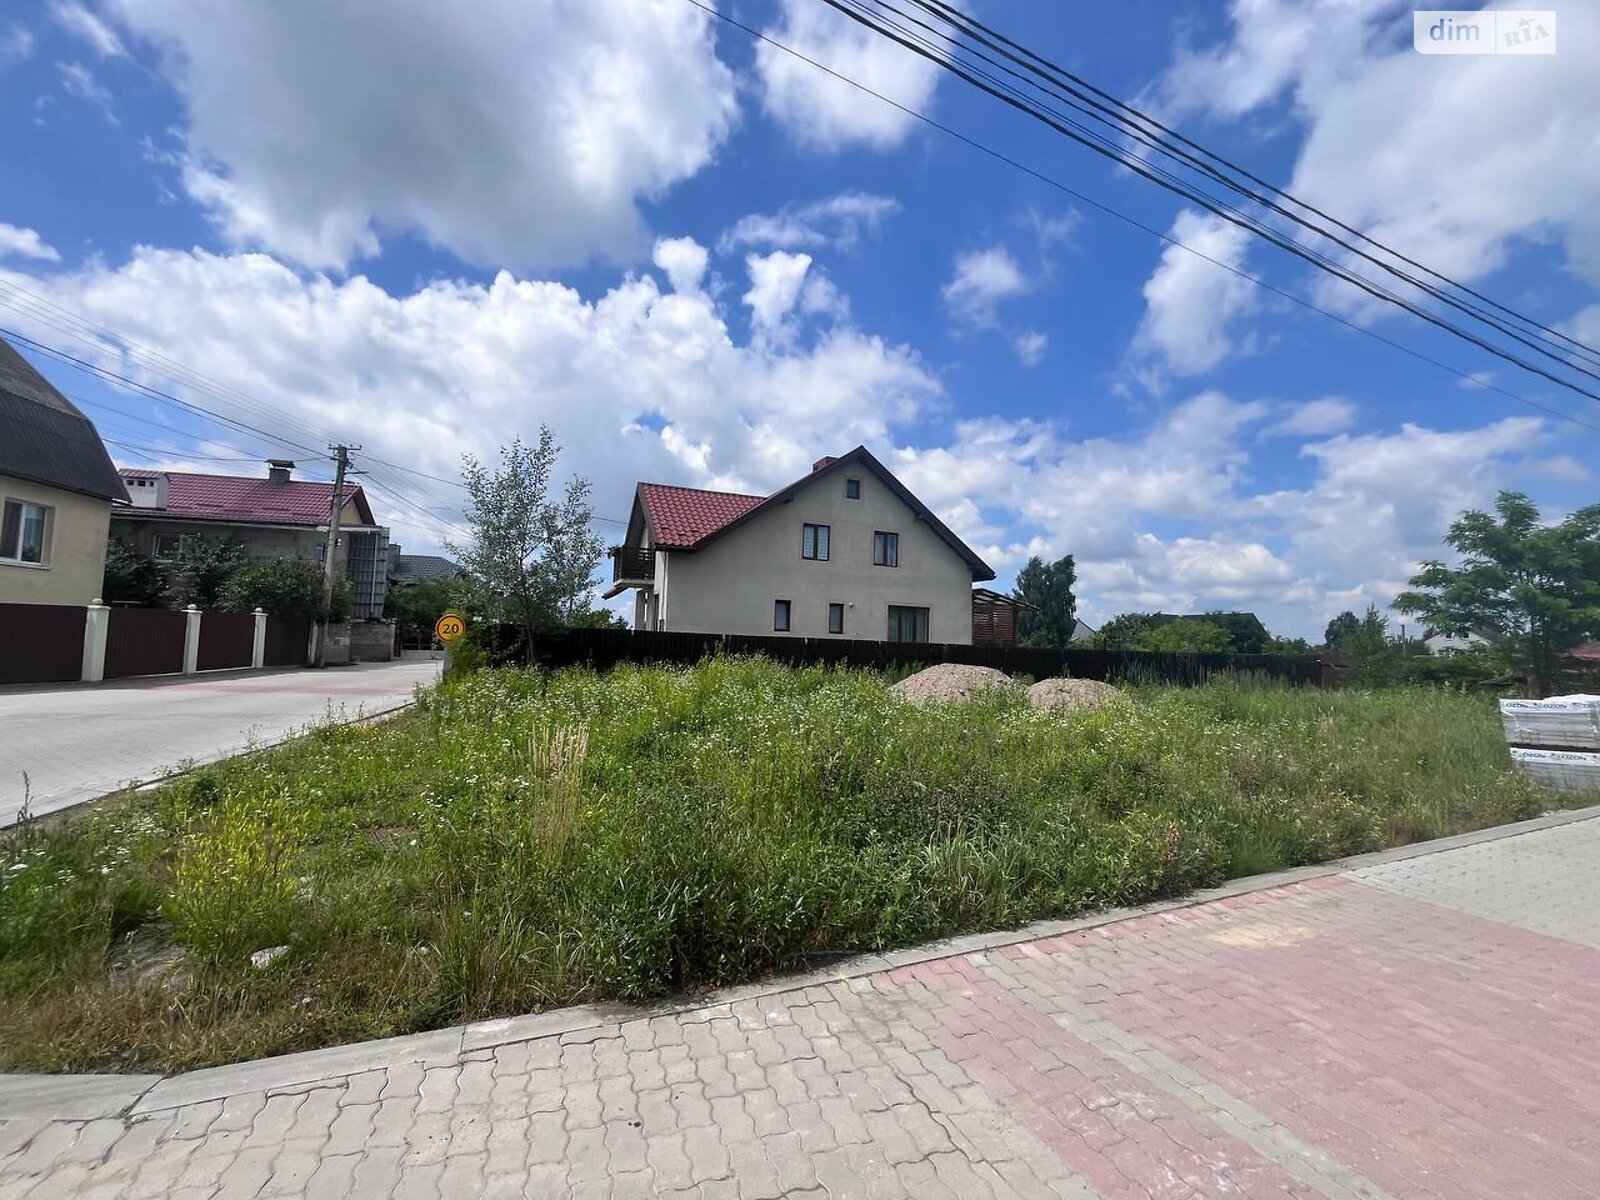 Земельный участок под жилую застройку в Рясно-Русском, площадь 5.34 сотки фото 1